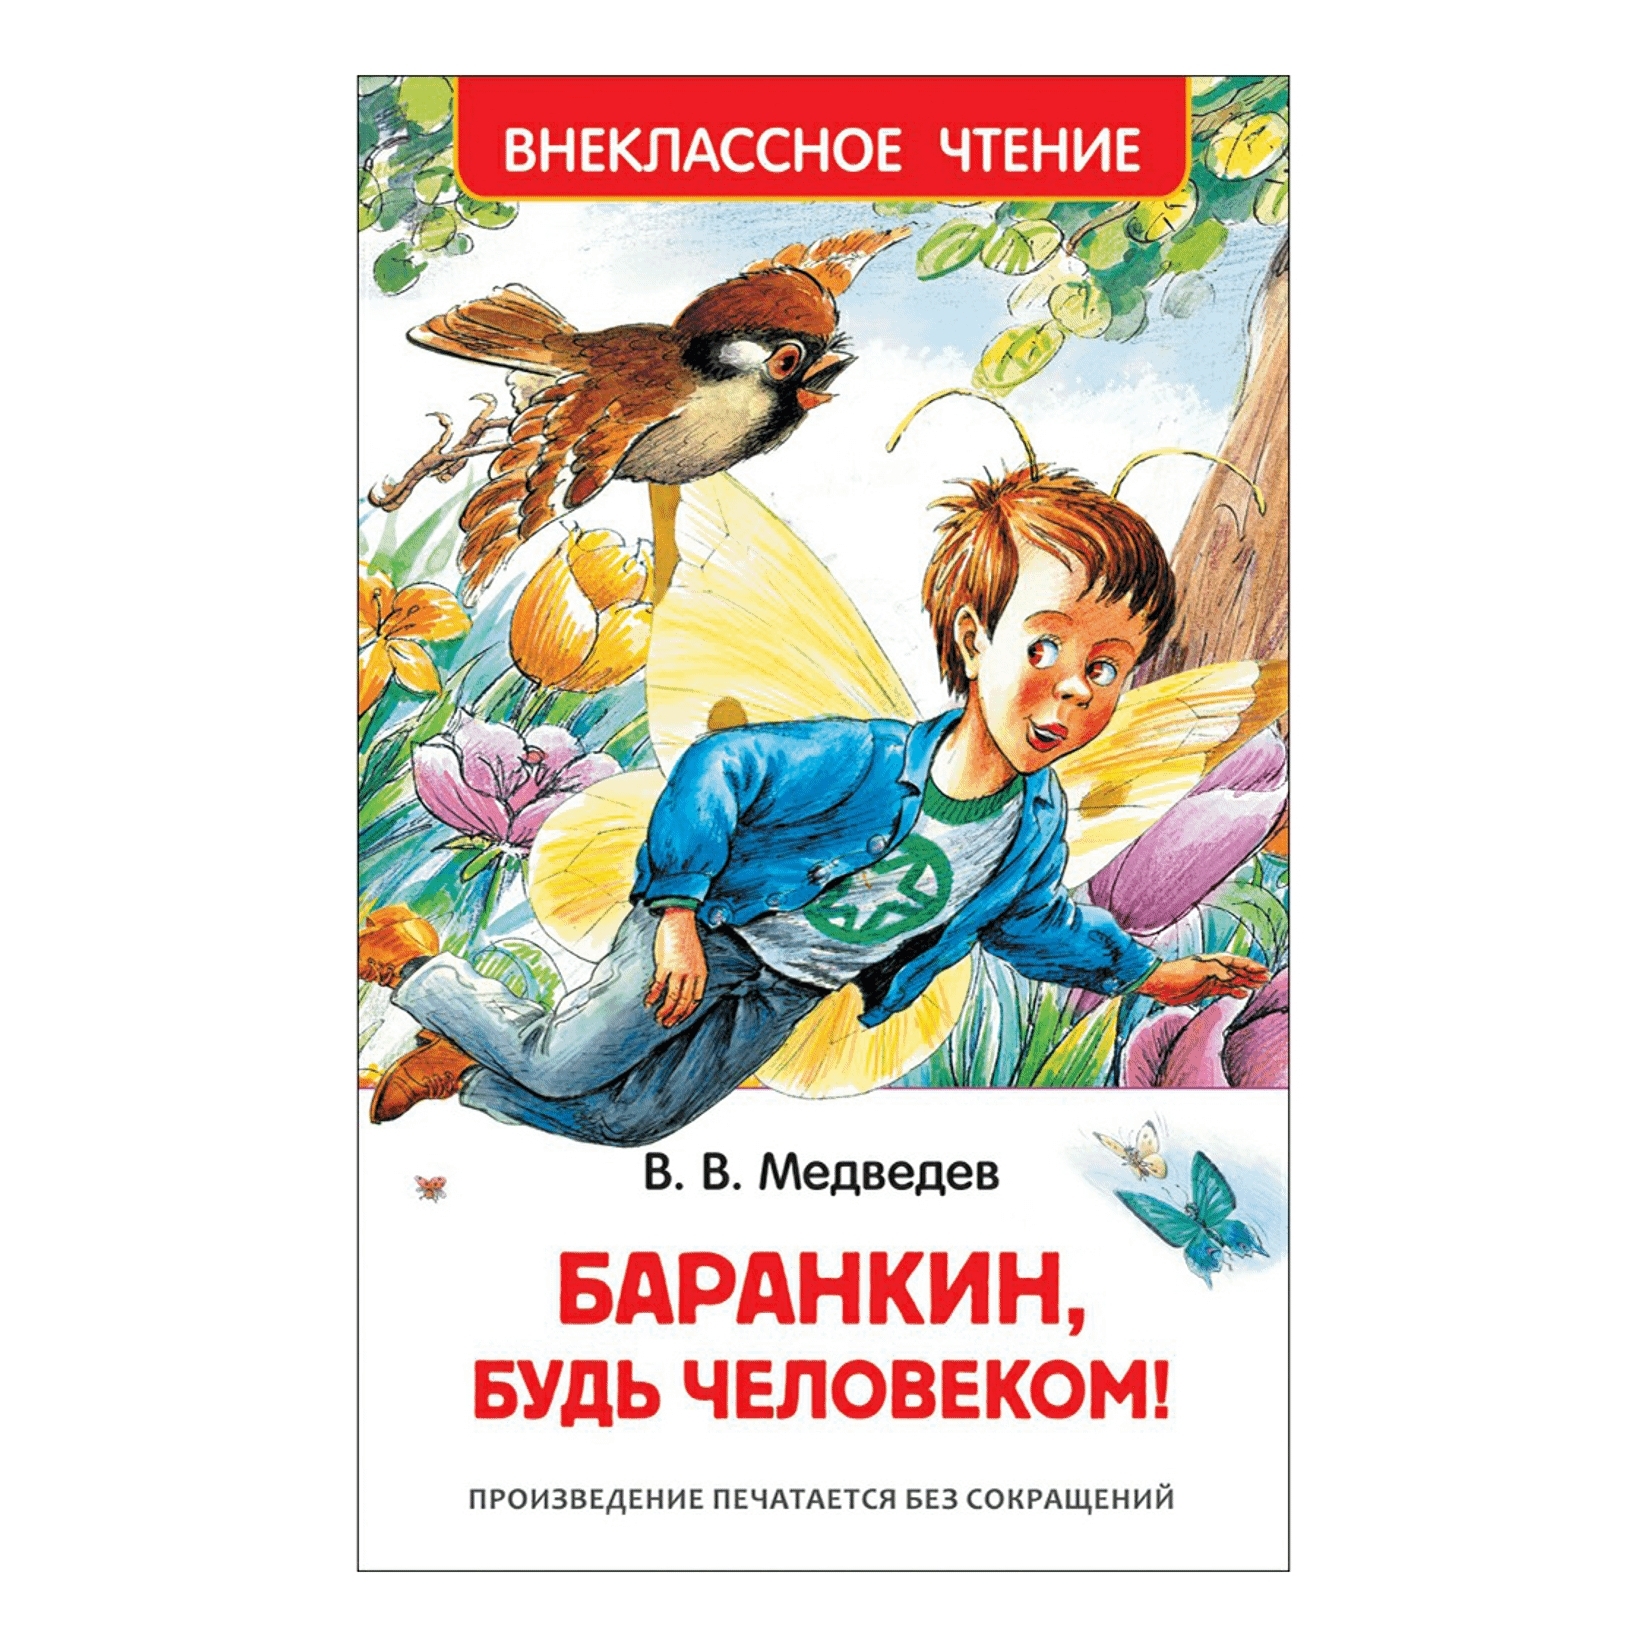 Книга Медведева Баранкин будь человеком. Медведев Баранкин будь человеком обложка. Читать будь человеком полностью